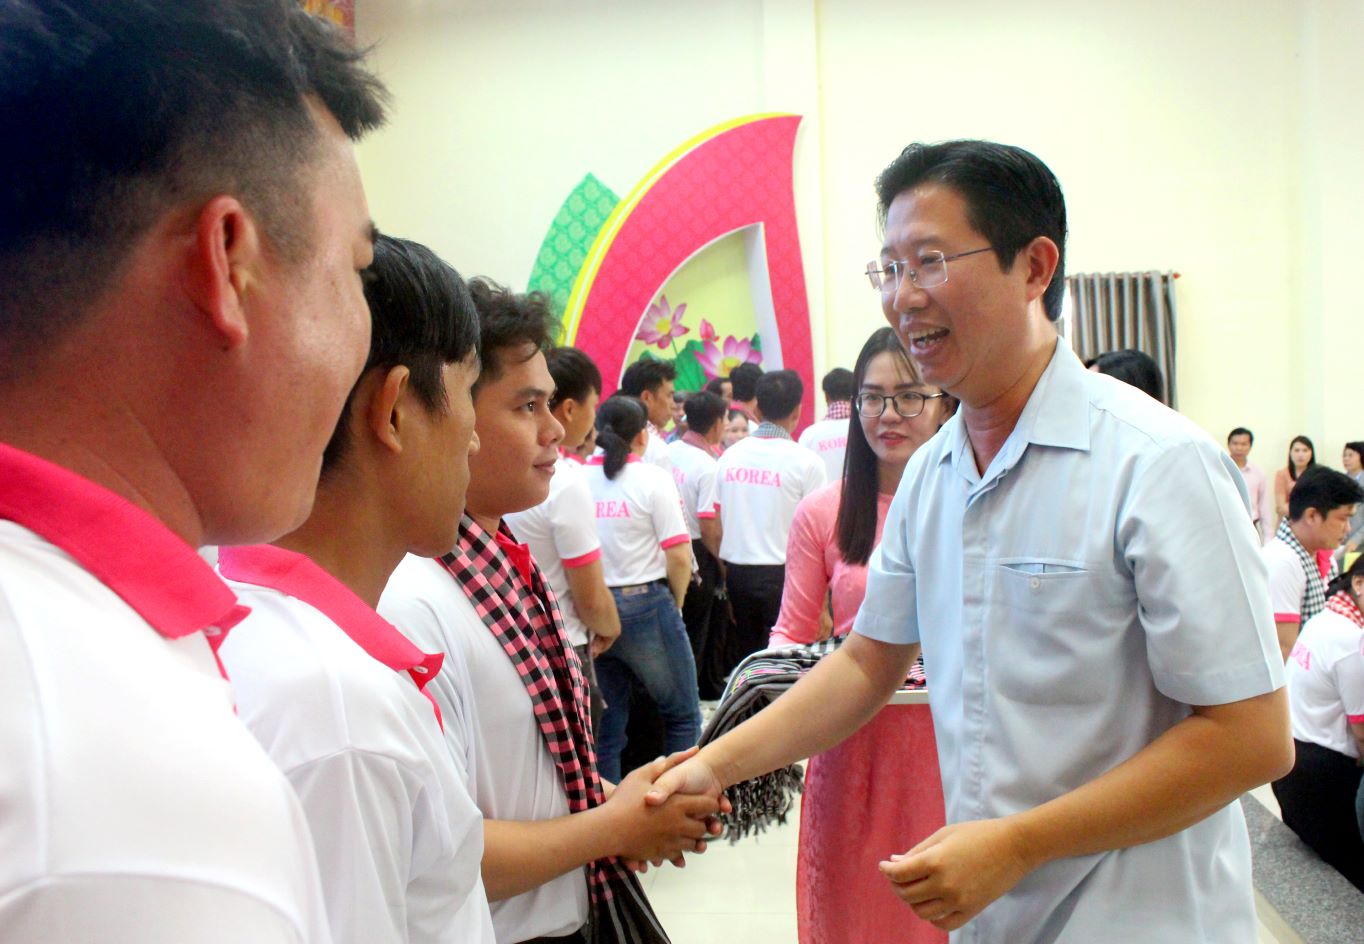 Phó Chủ tịch UBND tỉnh Đồng Tháp Huỳnh Minh Tuấn ân cần thăm hỏi và chúc may mắn đến người lao động. Ảnh: Lâm Điền 